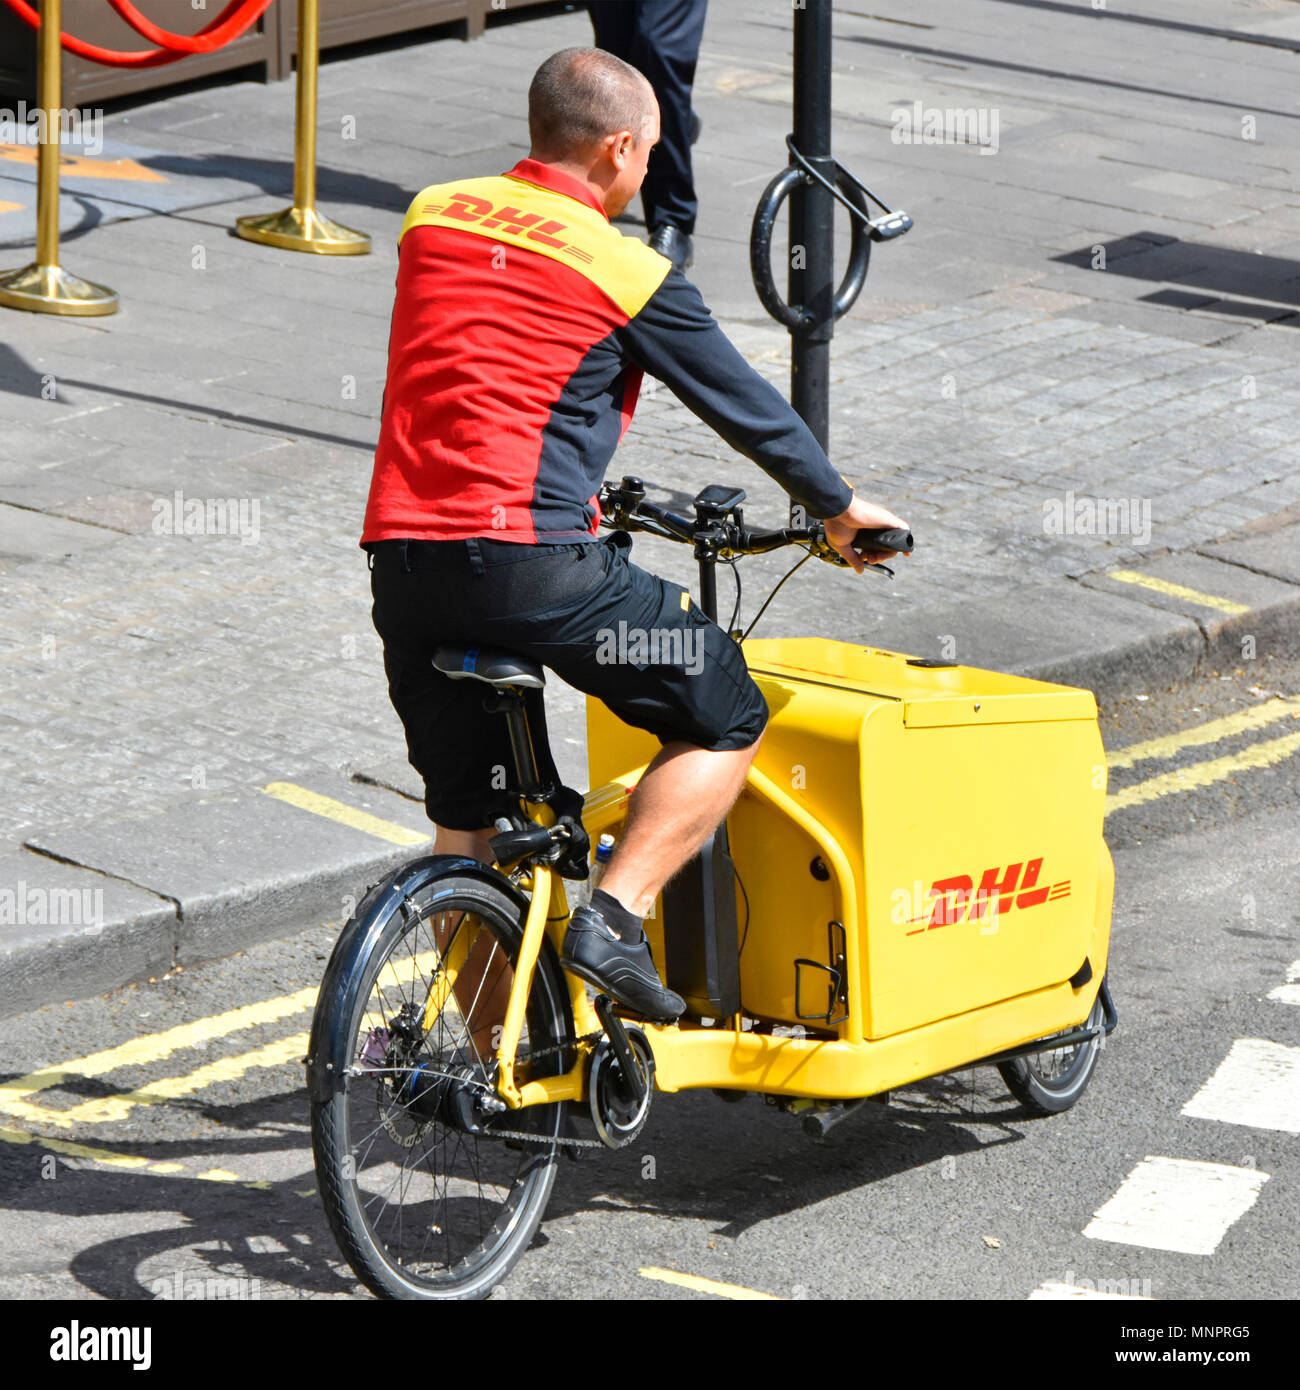 Ungewöhnliche Beschäftigung job DHL Paketversand Mann in Uniform an Radfahren entlang der Straße auf Fracht cargo pedal Bike, die Pakete ausliefern, London UK arbeiten Stockfoto